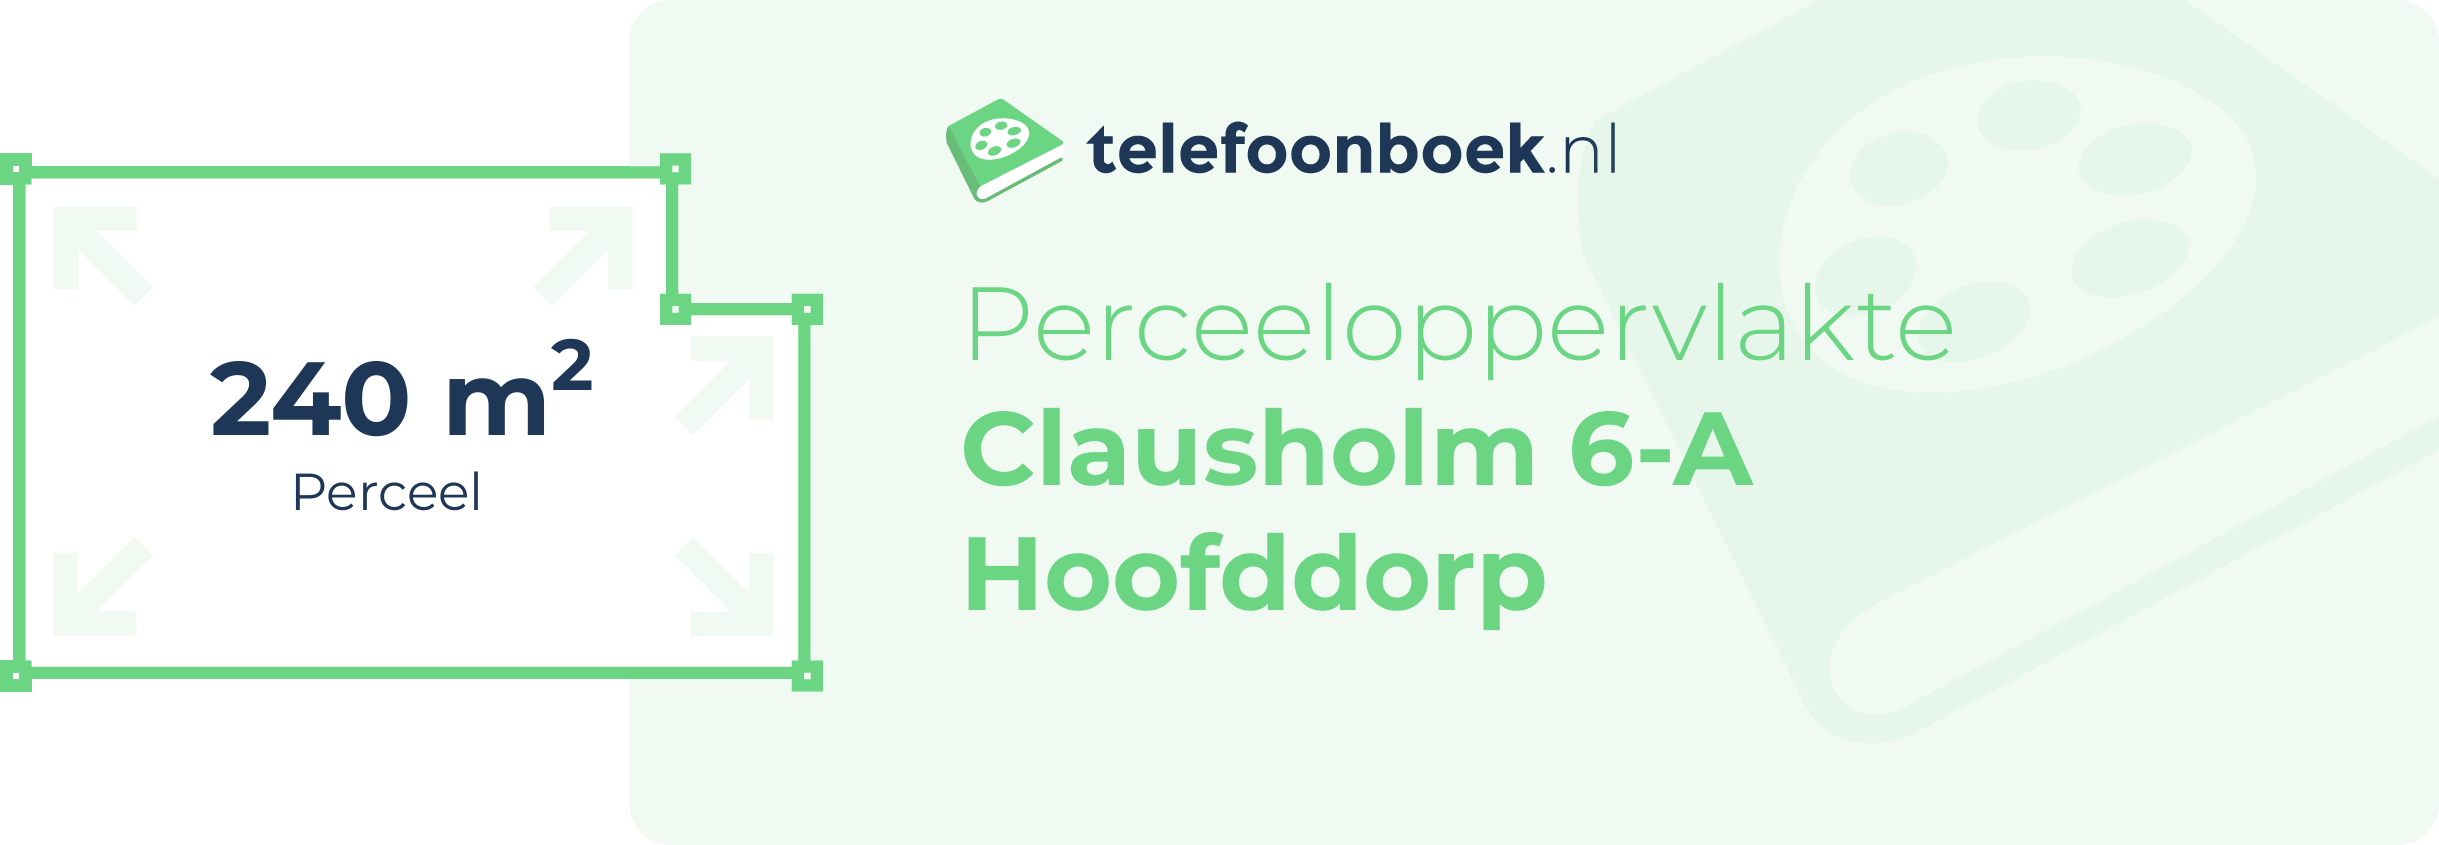 Perceeloppervlakte Clausholm 6-A Hoofddorp